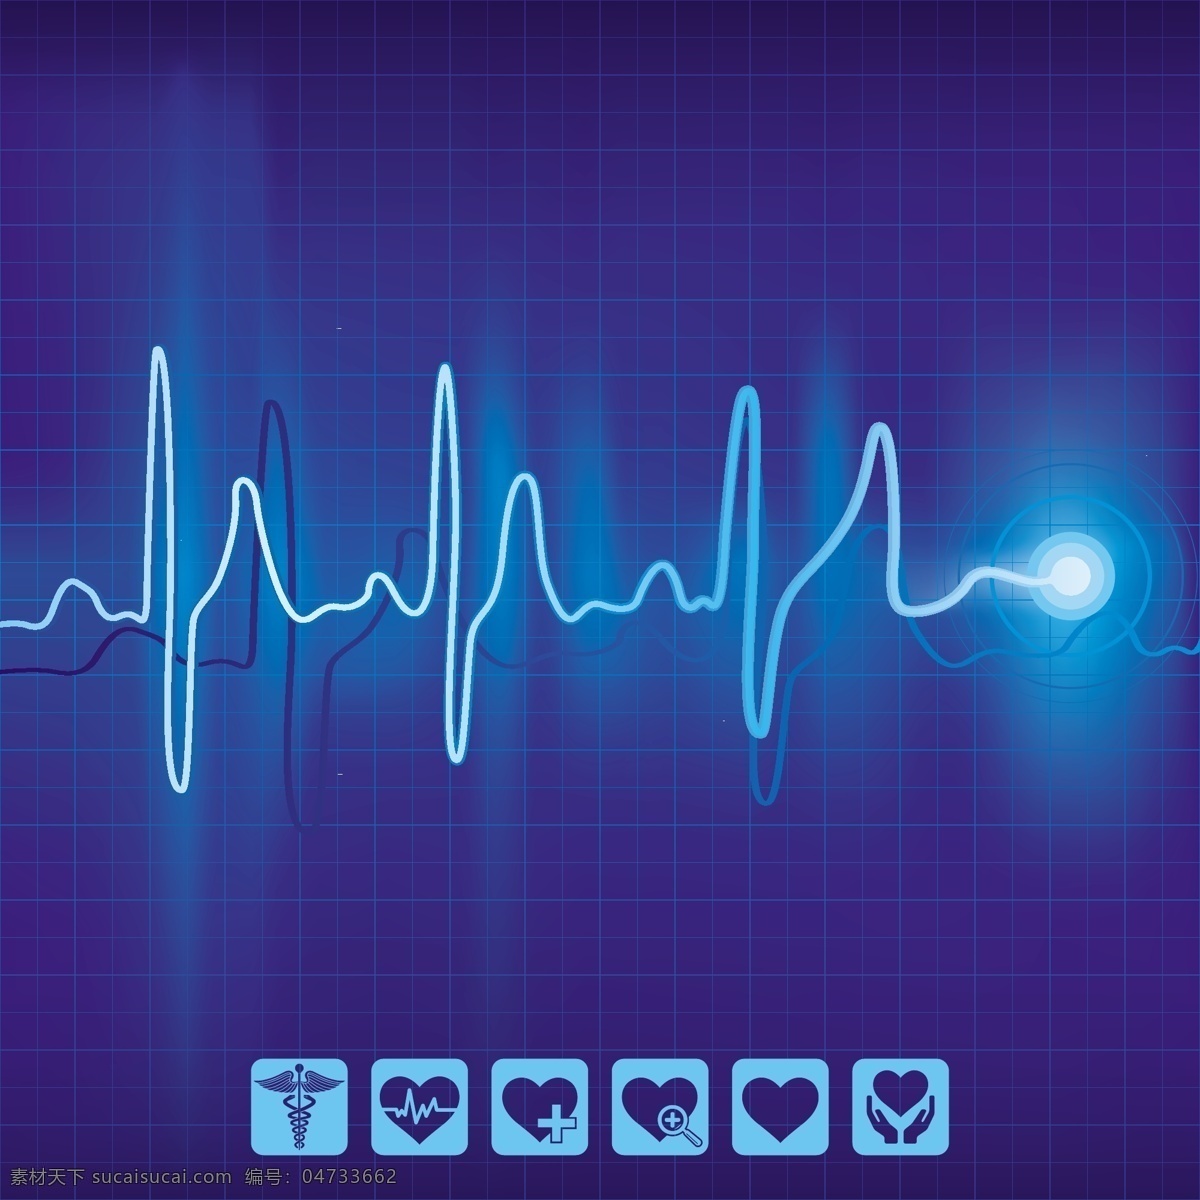 蓝色 心电图 背景 矢量 模板下载 图标 医疗 生活百科 矢量素材